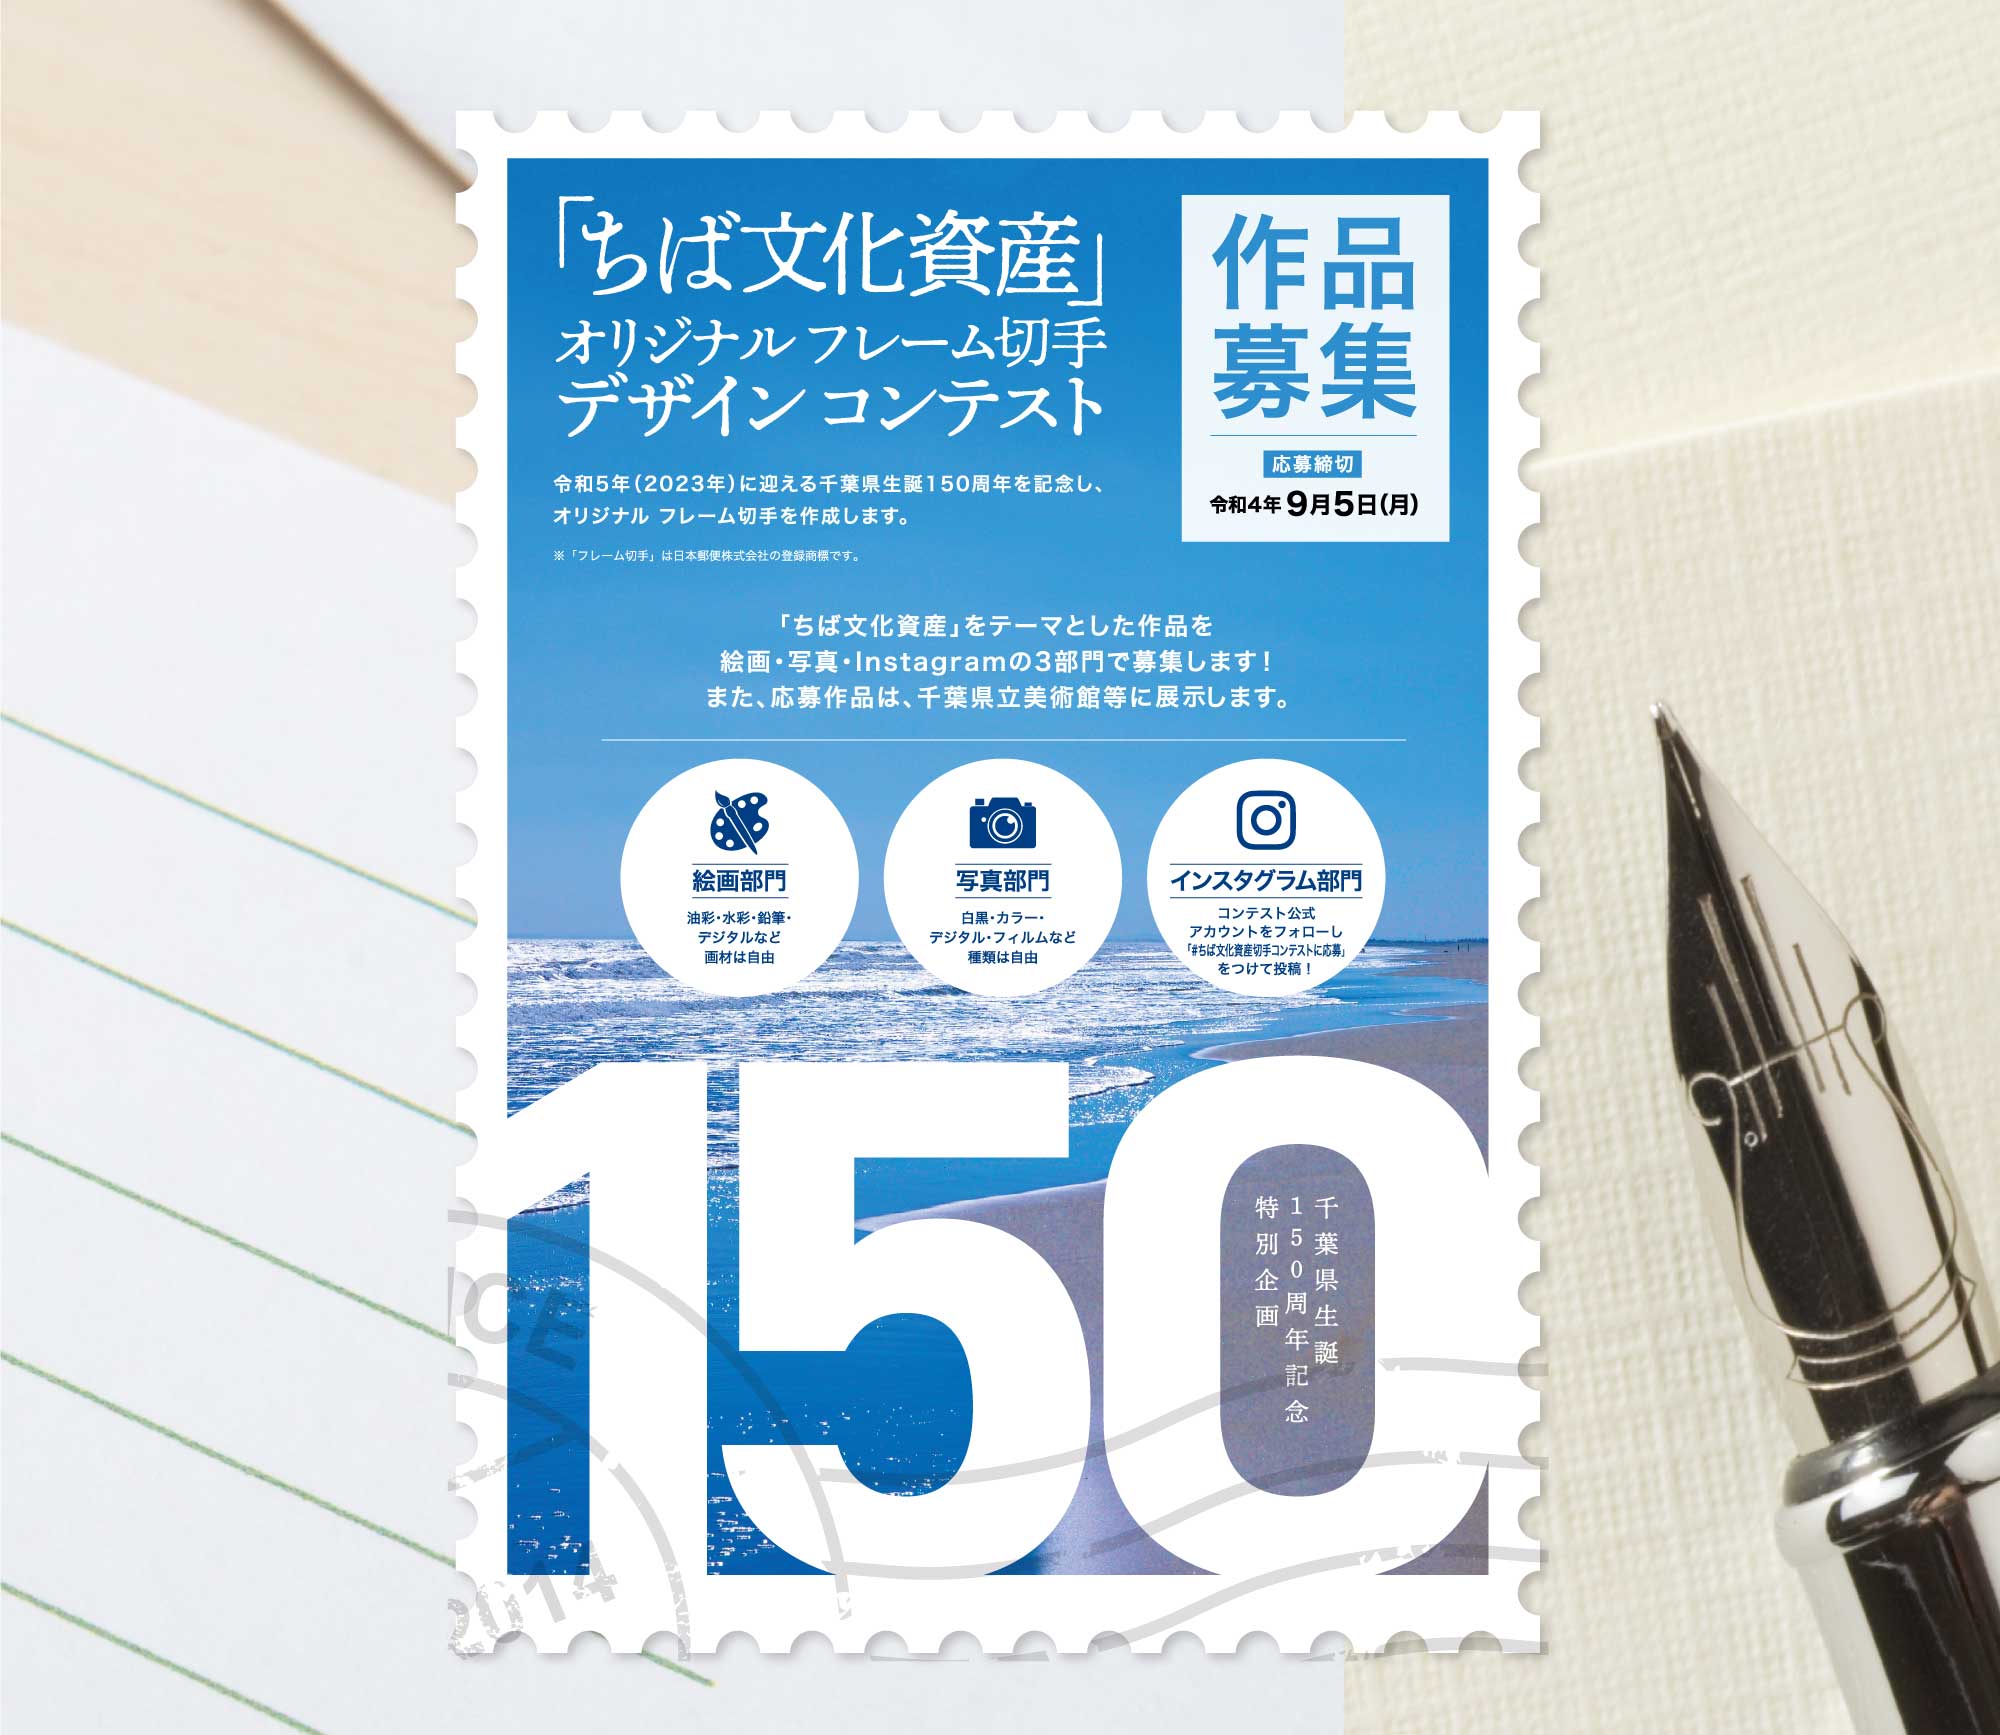 「ちば文化資産」オリジナルフレーム切手 デザインコンテスト 令和5年(2023年)に迎える千葉県生誕150周年を記念し、オリジナル フレーム切手を作成します。